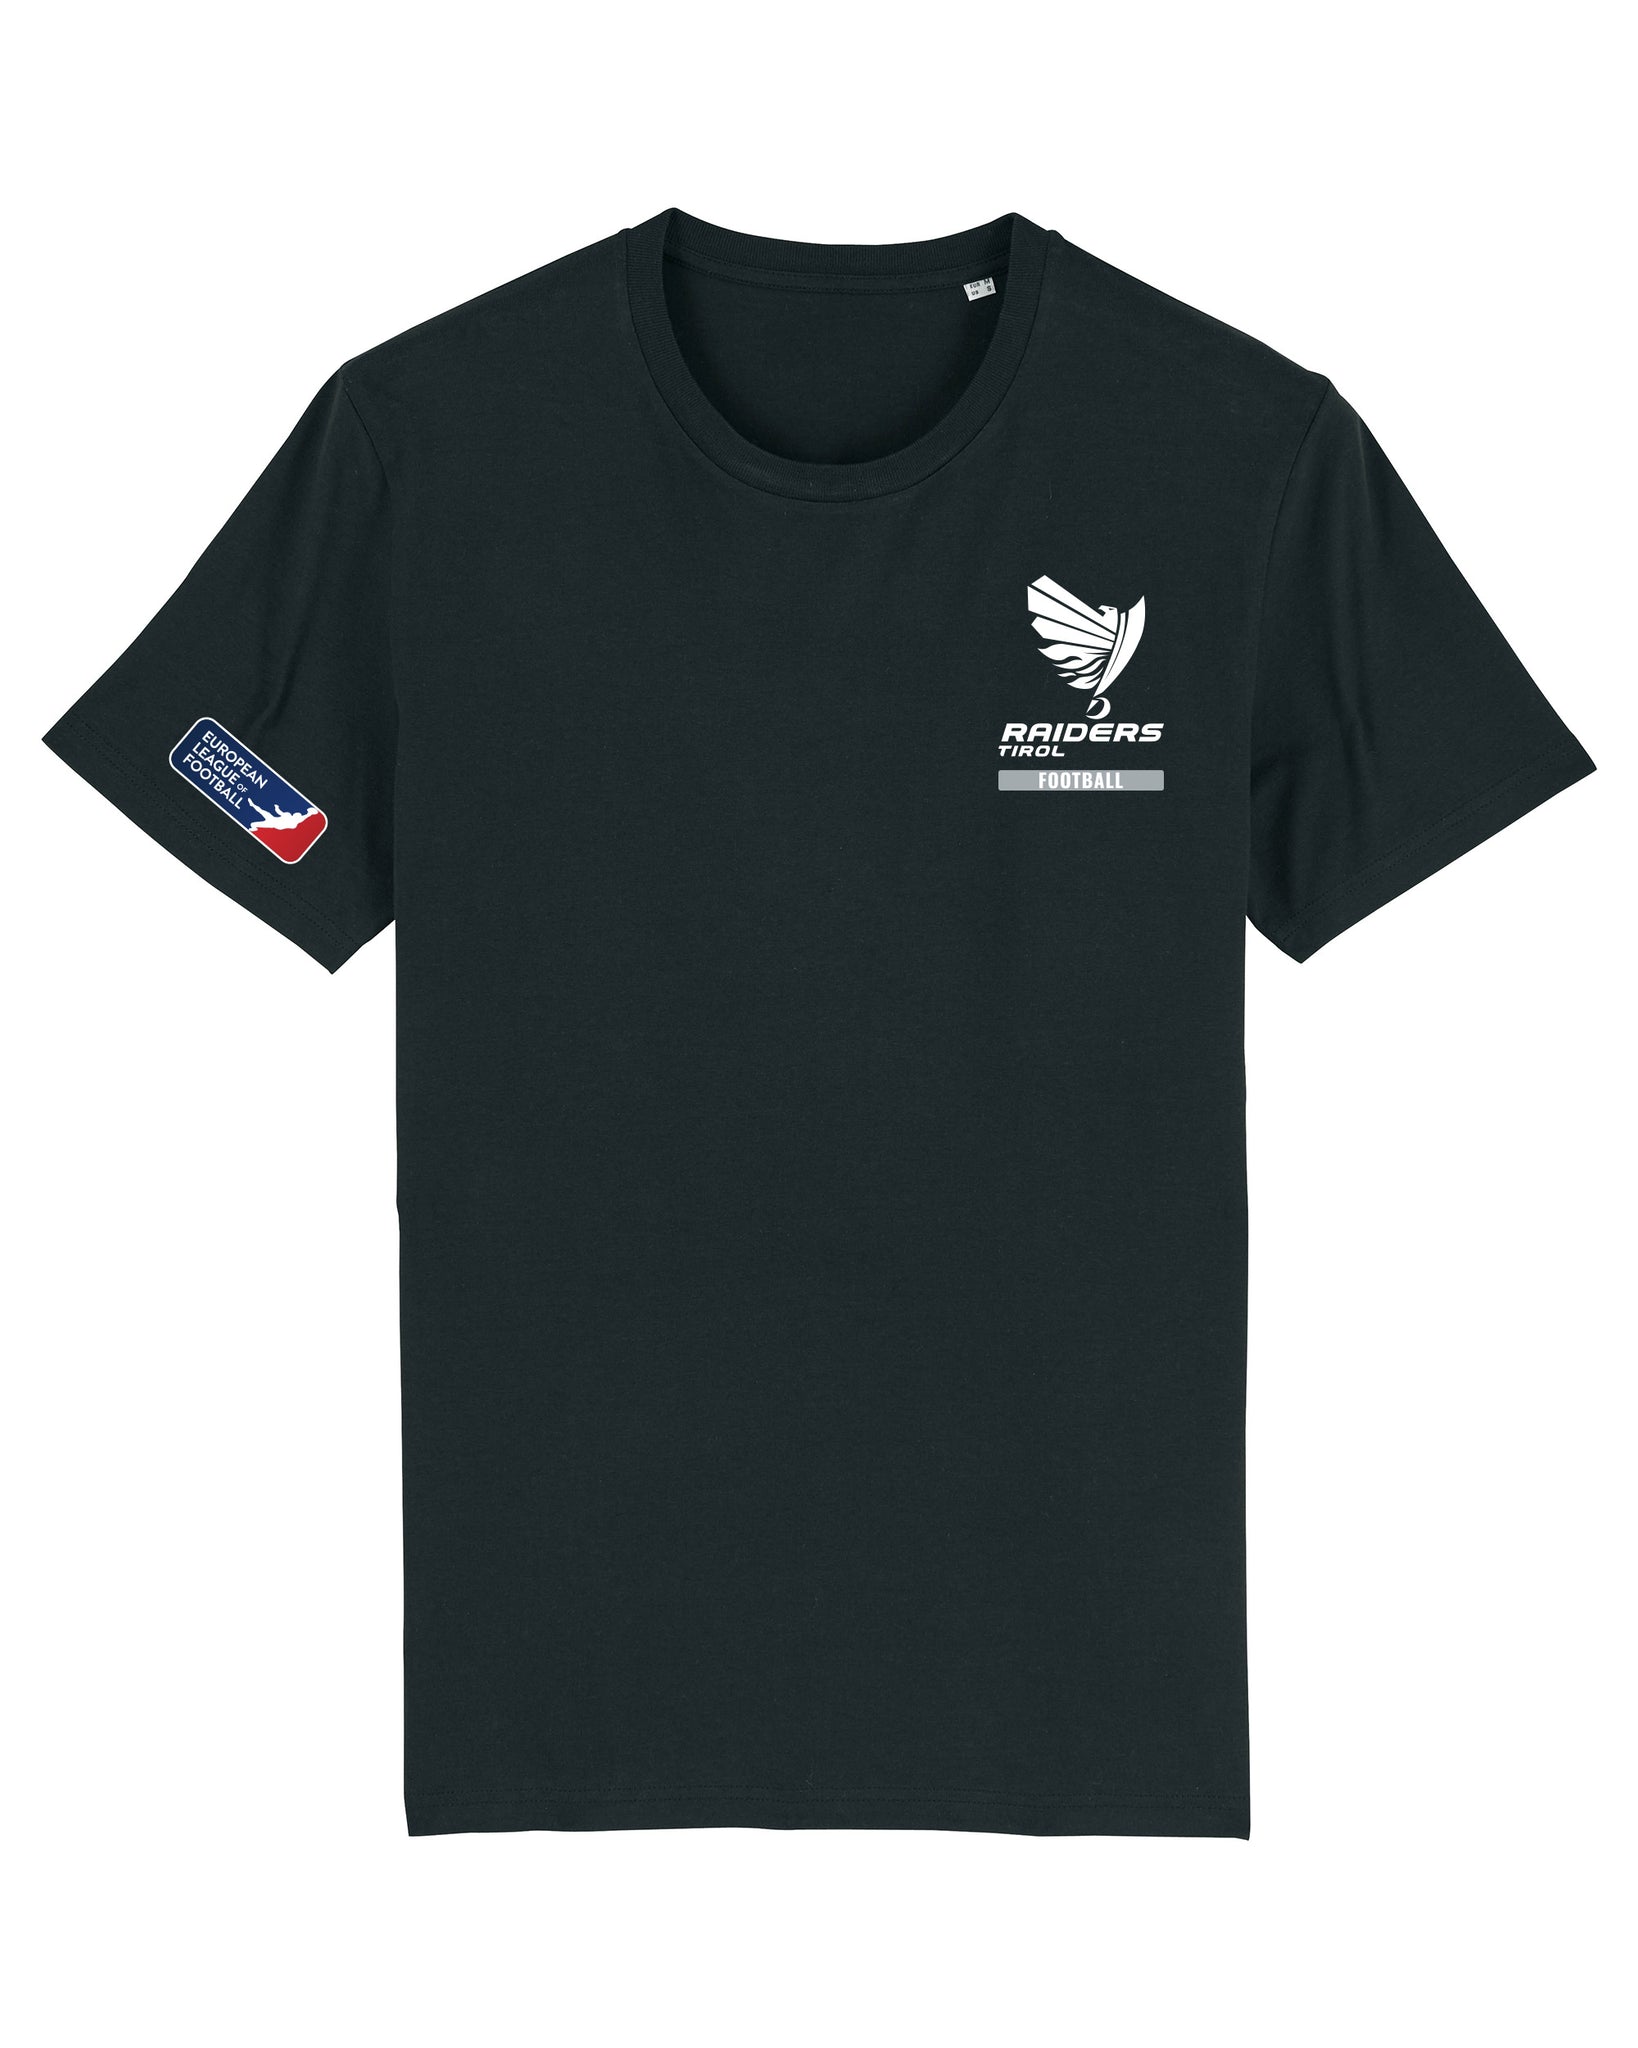 Raiders Tirol Essential T-Shirt